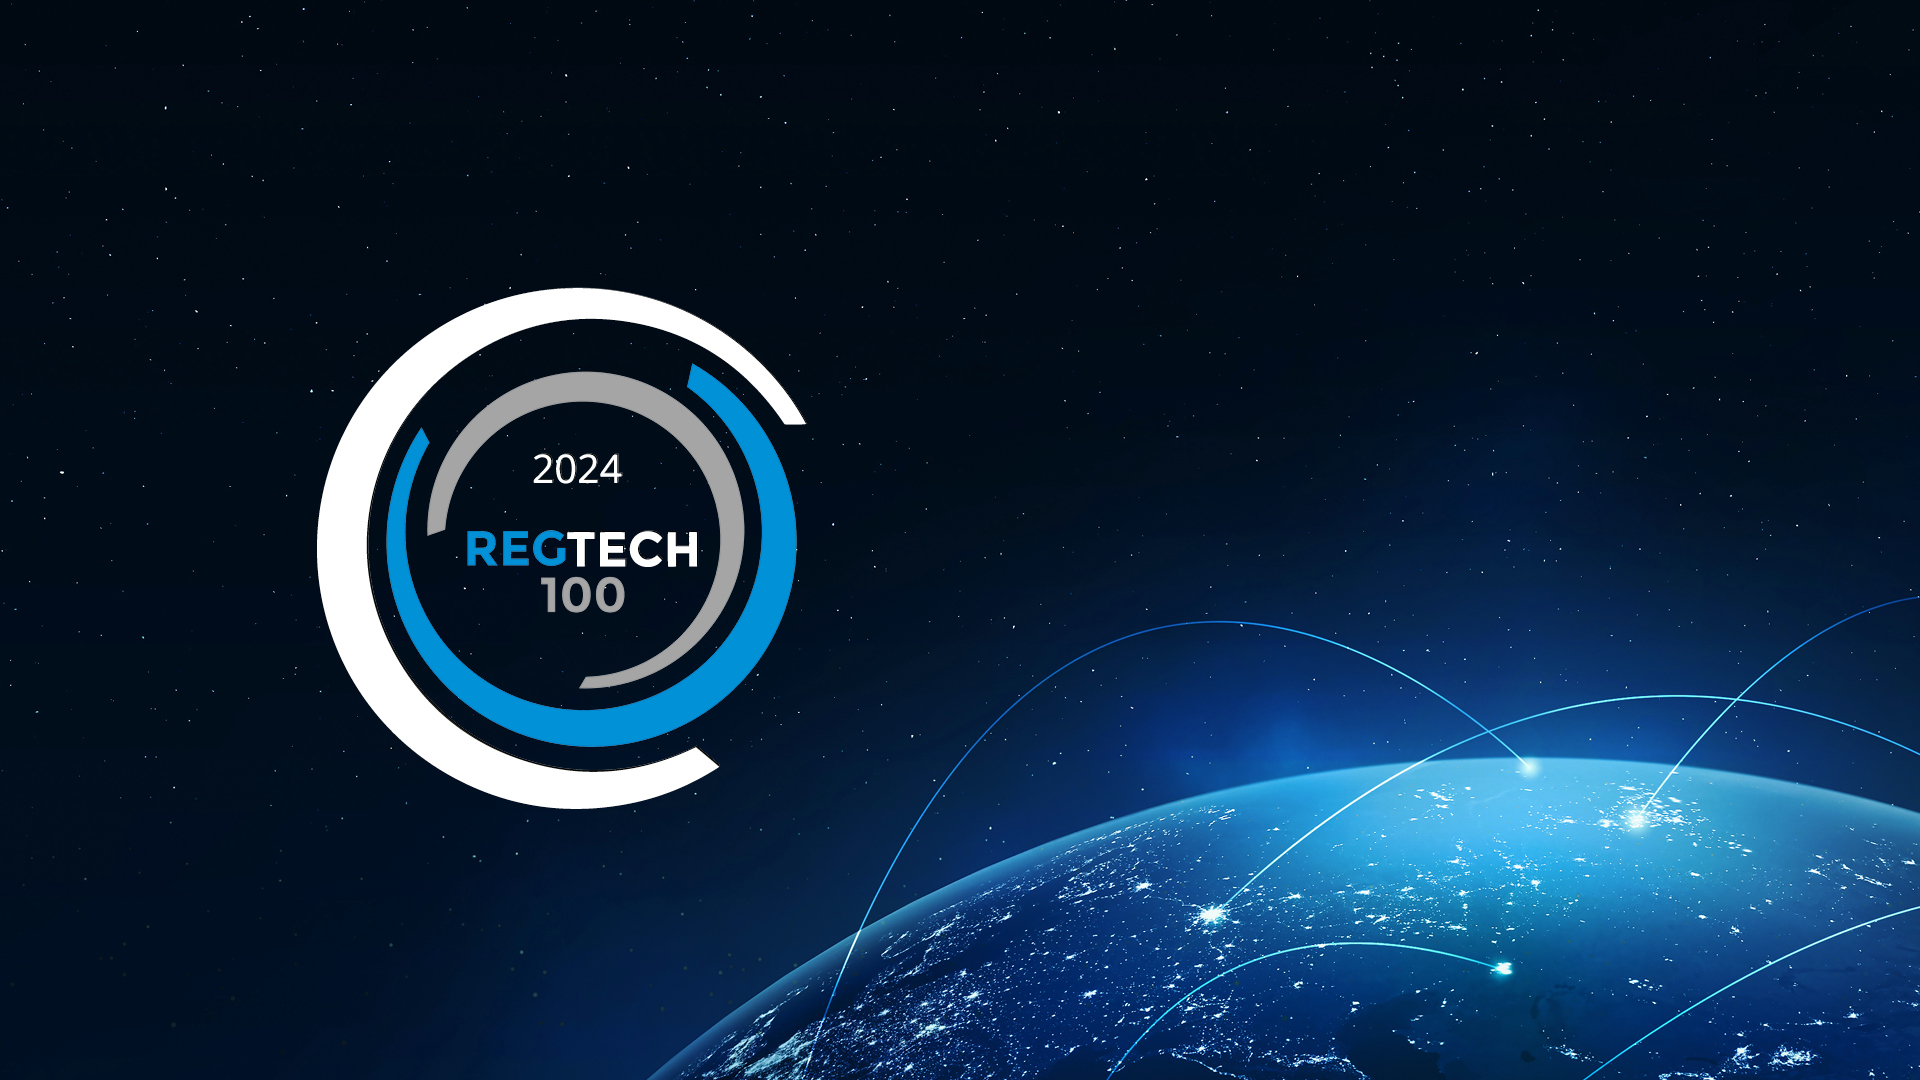 RegTech100, the list of the world’s most innovative RegTech companies